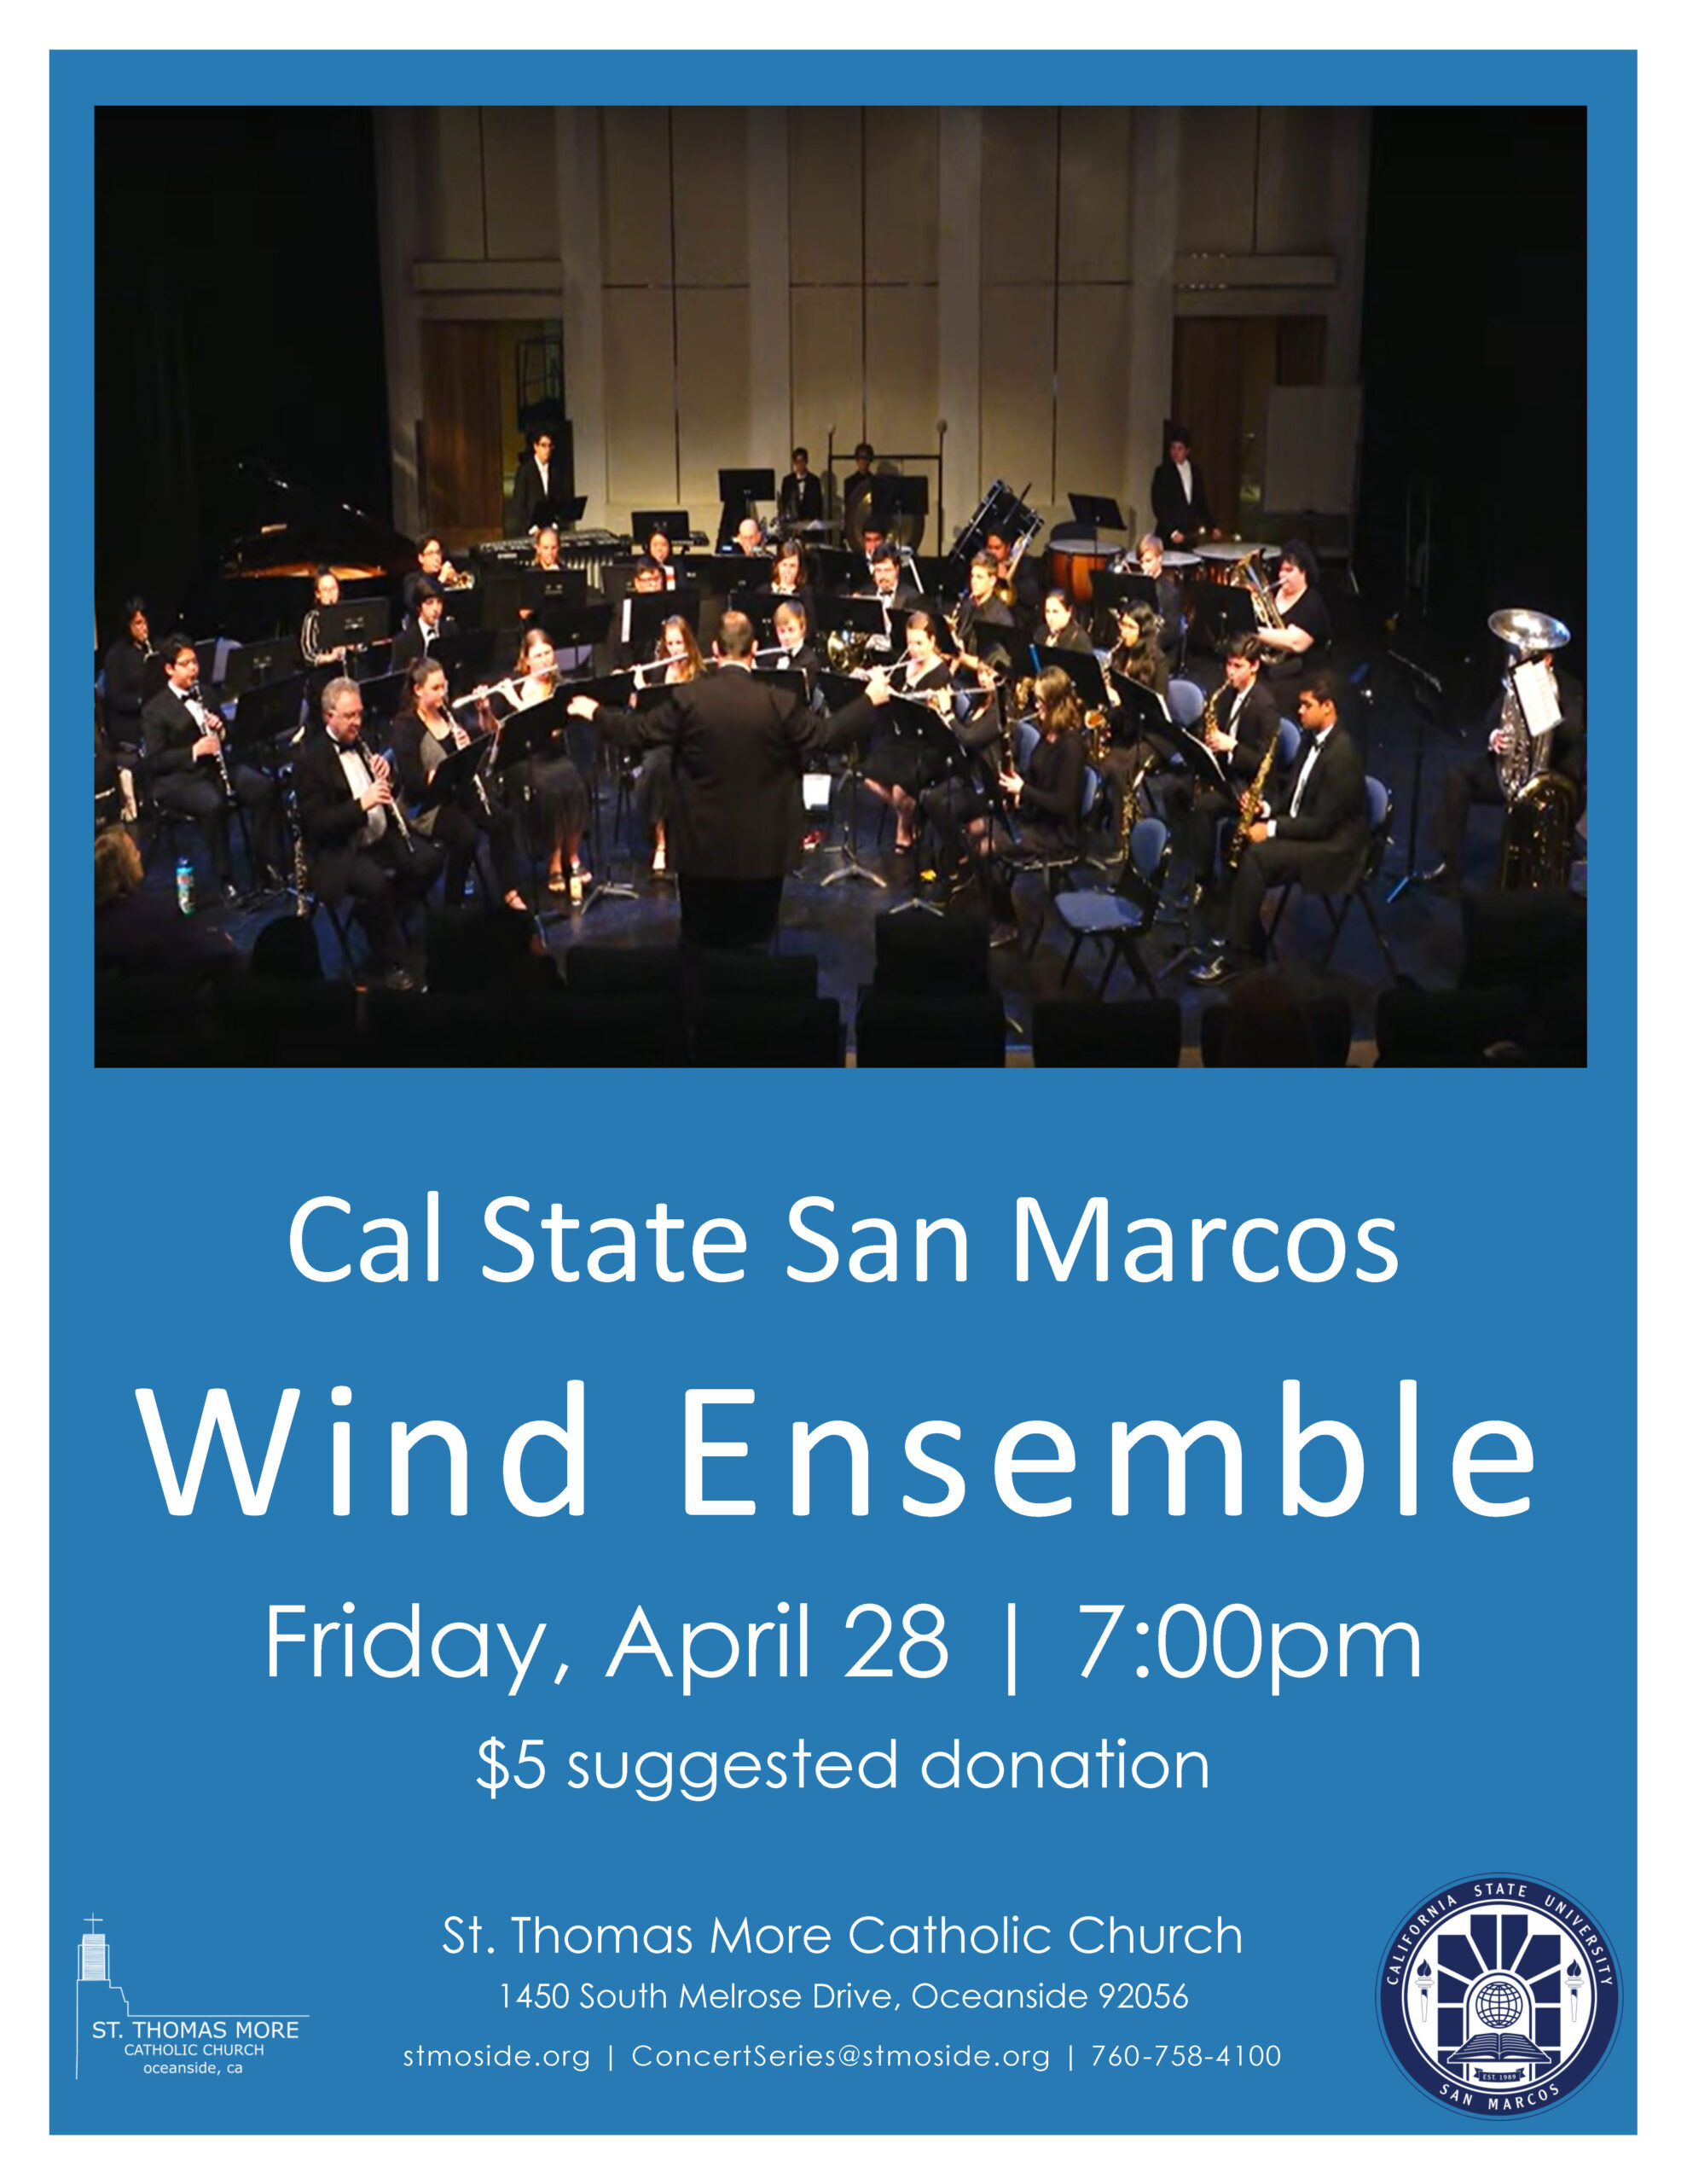 CSUSM Wind Ensemble Concert April 28 at 7:00pm